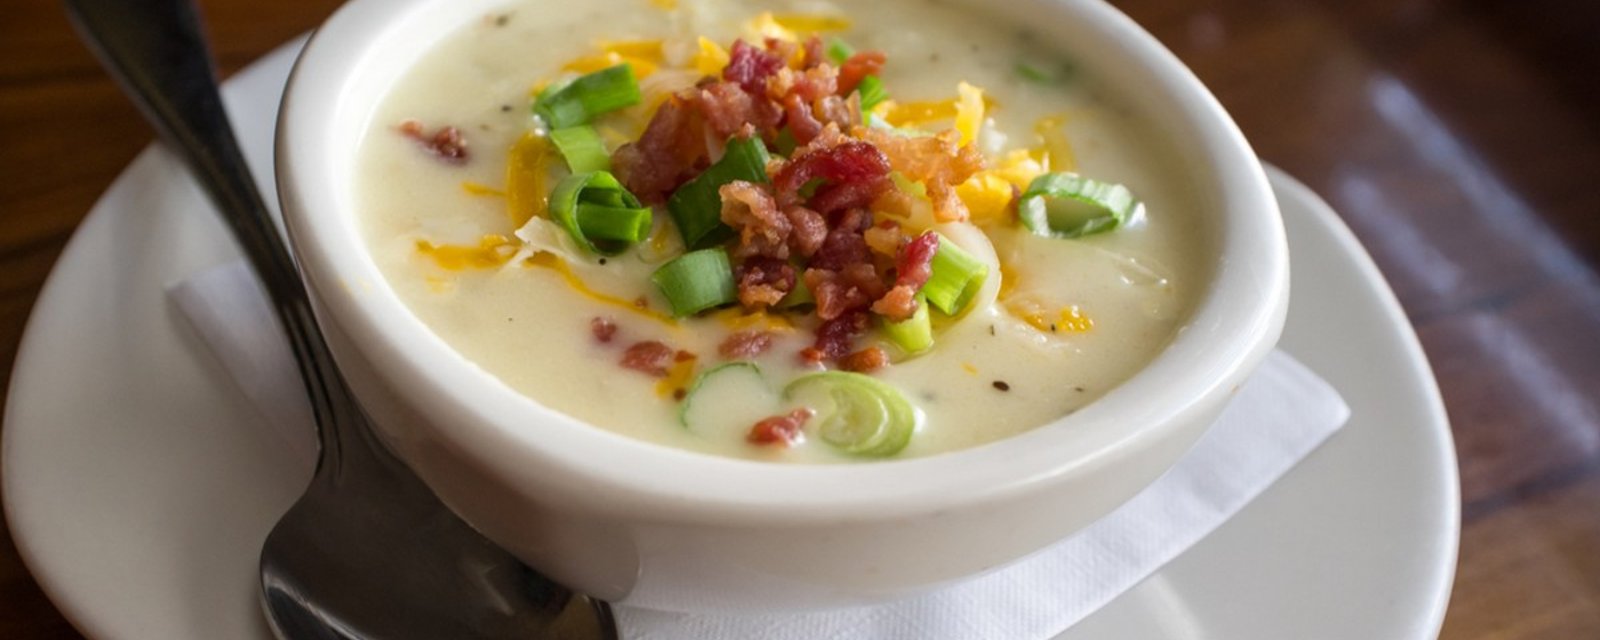 Fromage, bacon et pomme de terre : Dans la mijoteuse, ma soupe est encore mieux qu'au resto!